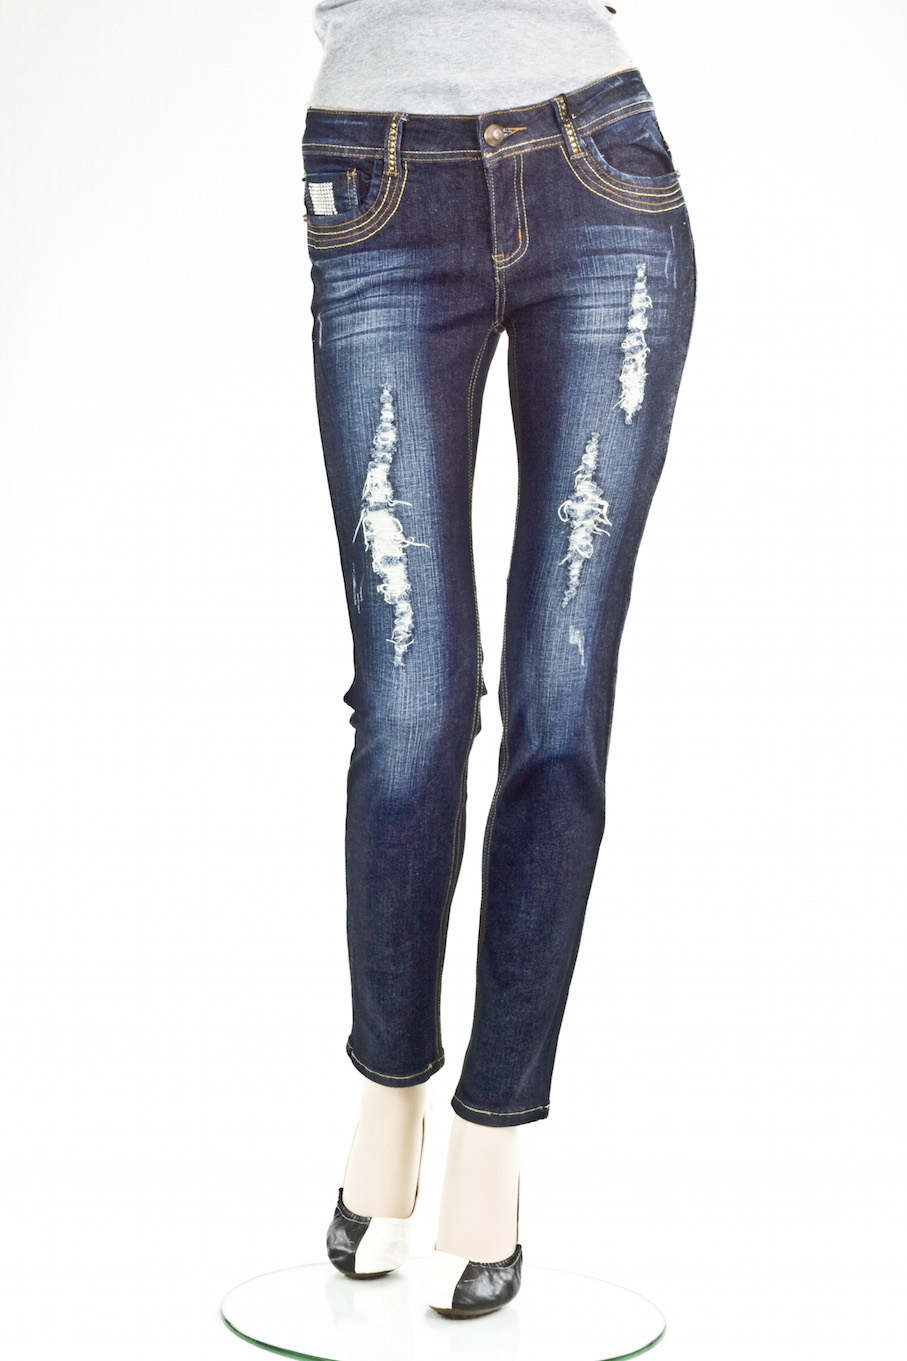 Женские джинсы VO Jeans LA винтажные "Скини" Distress Detailing skinny jeans d. blue интернет-магазин Fashion Jeans